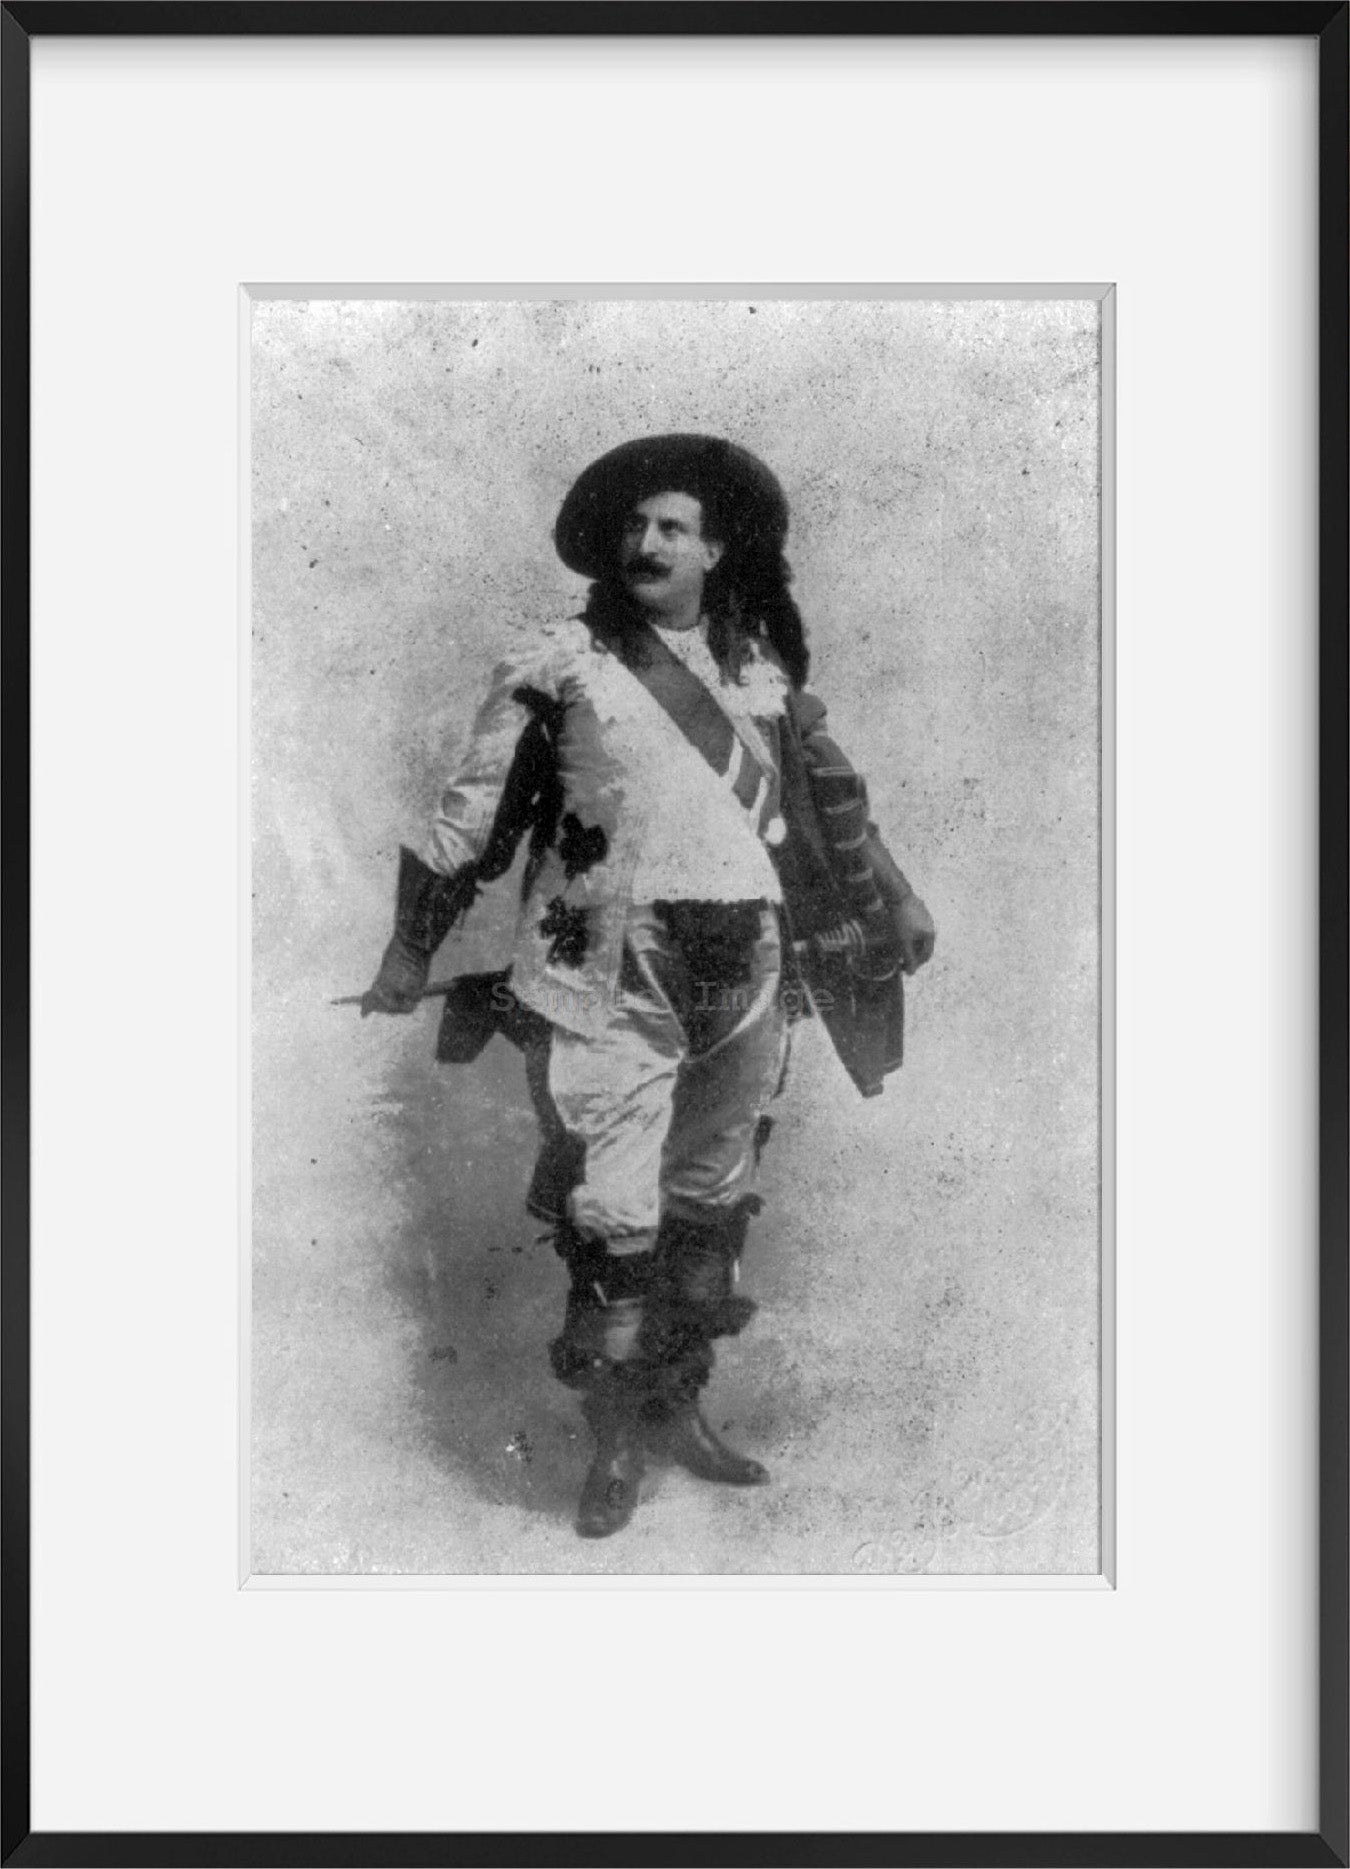 Photo: Mattia Battistini, 1856-1928, Italian operatic baritone, from opera Maria de